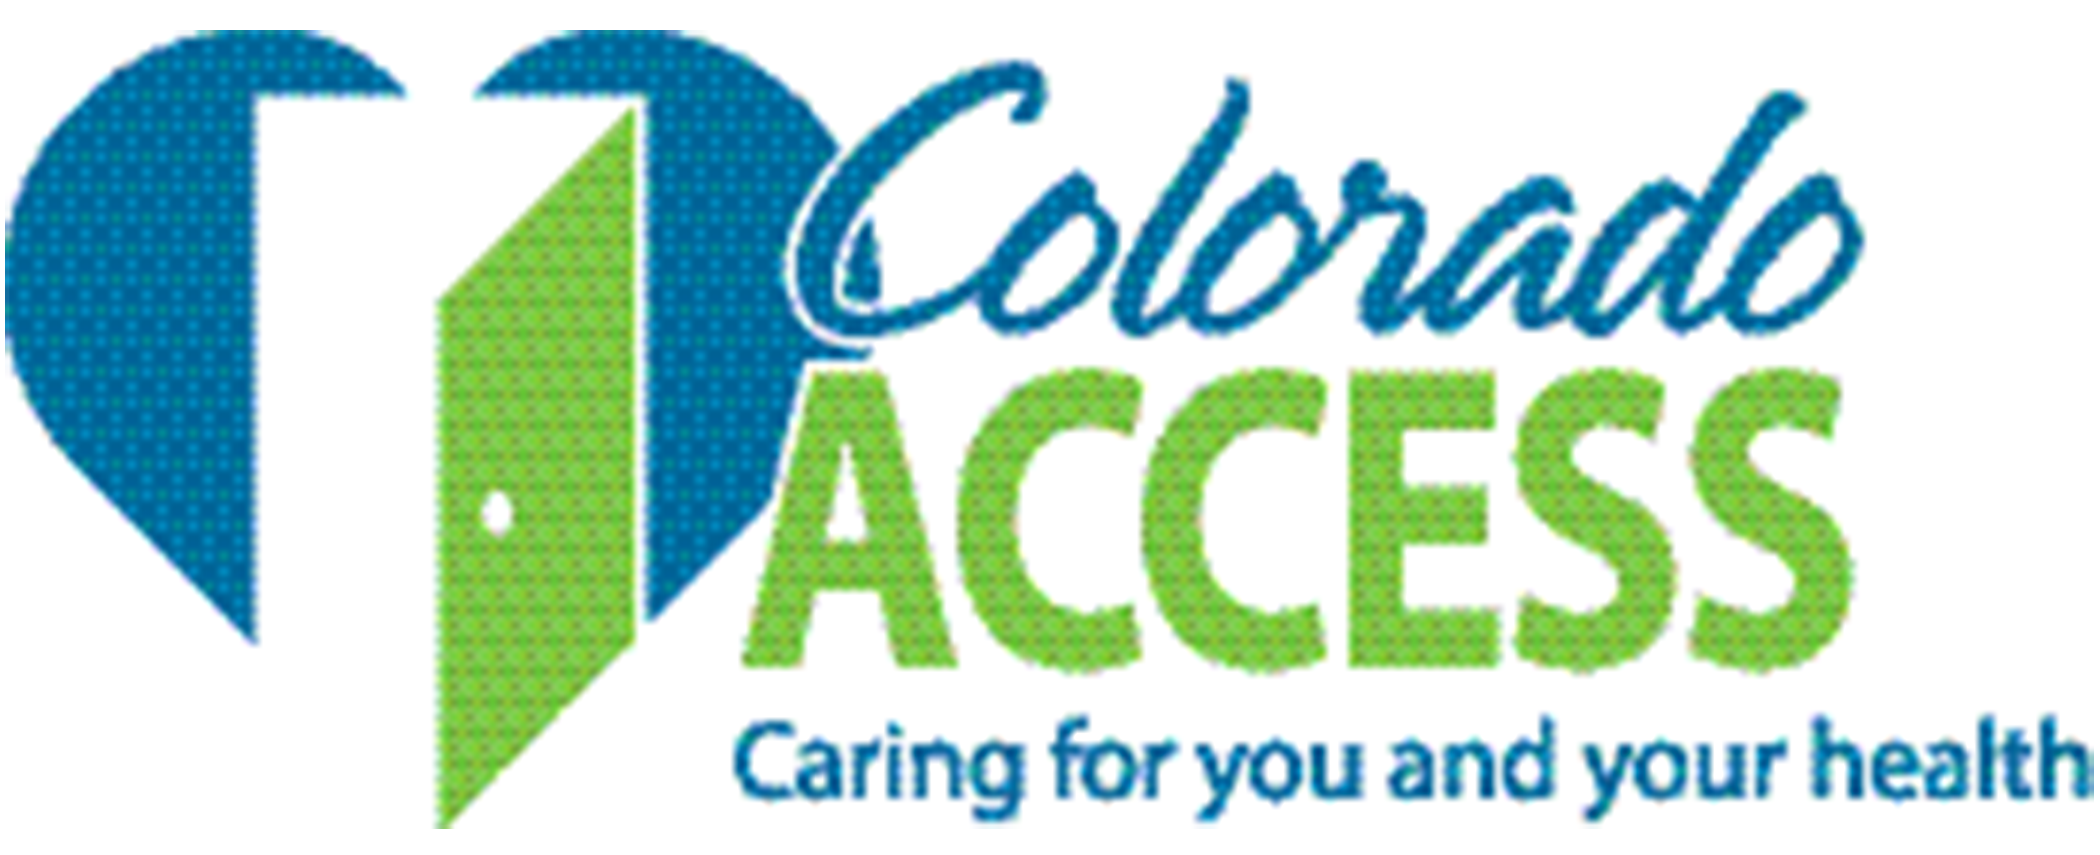 colorado access logo